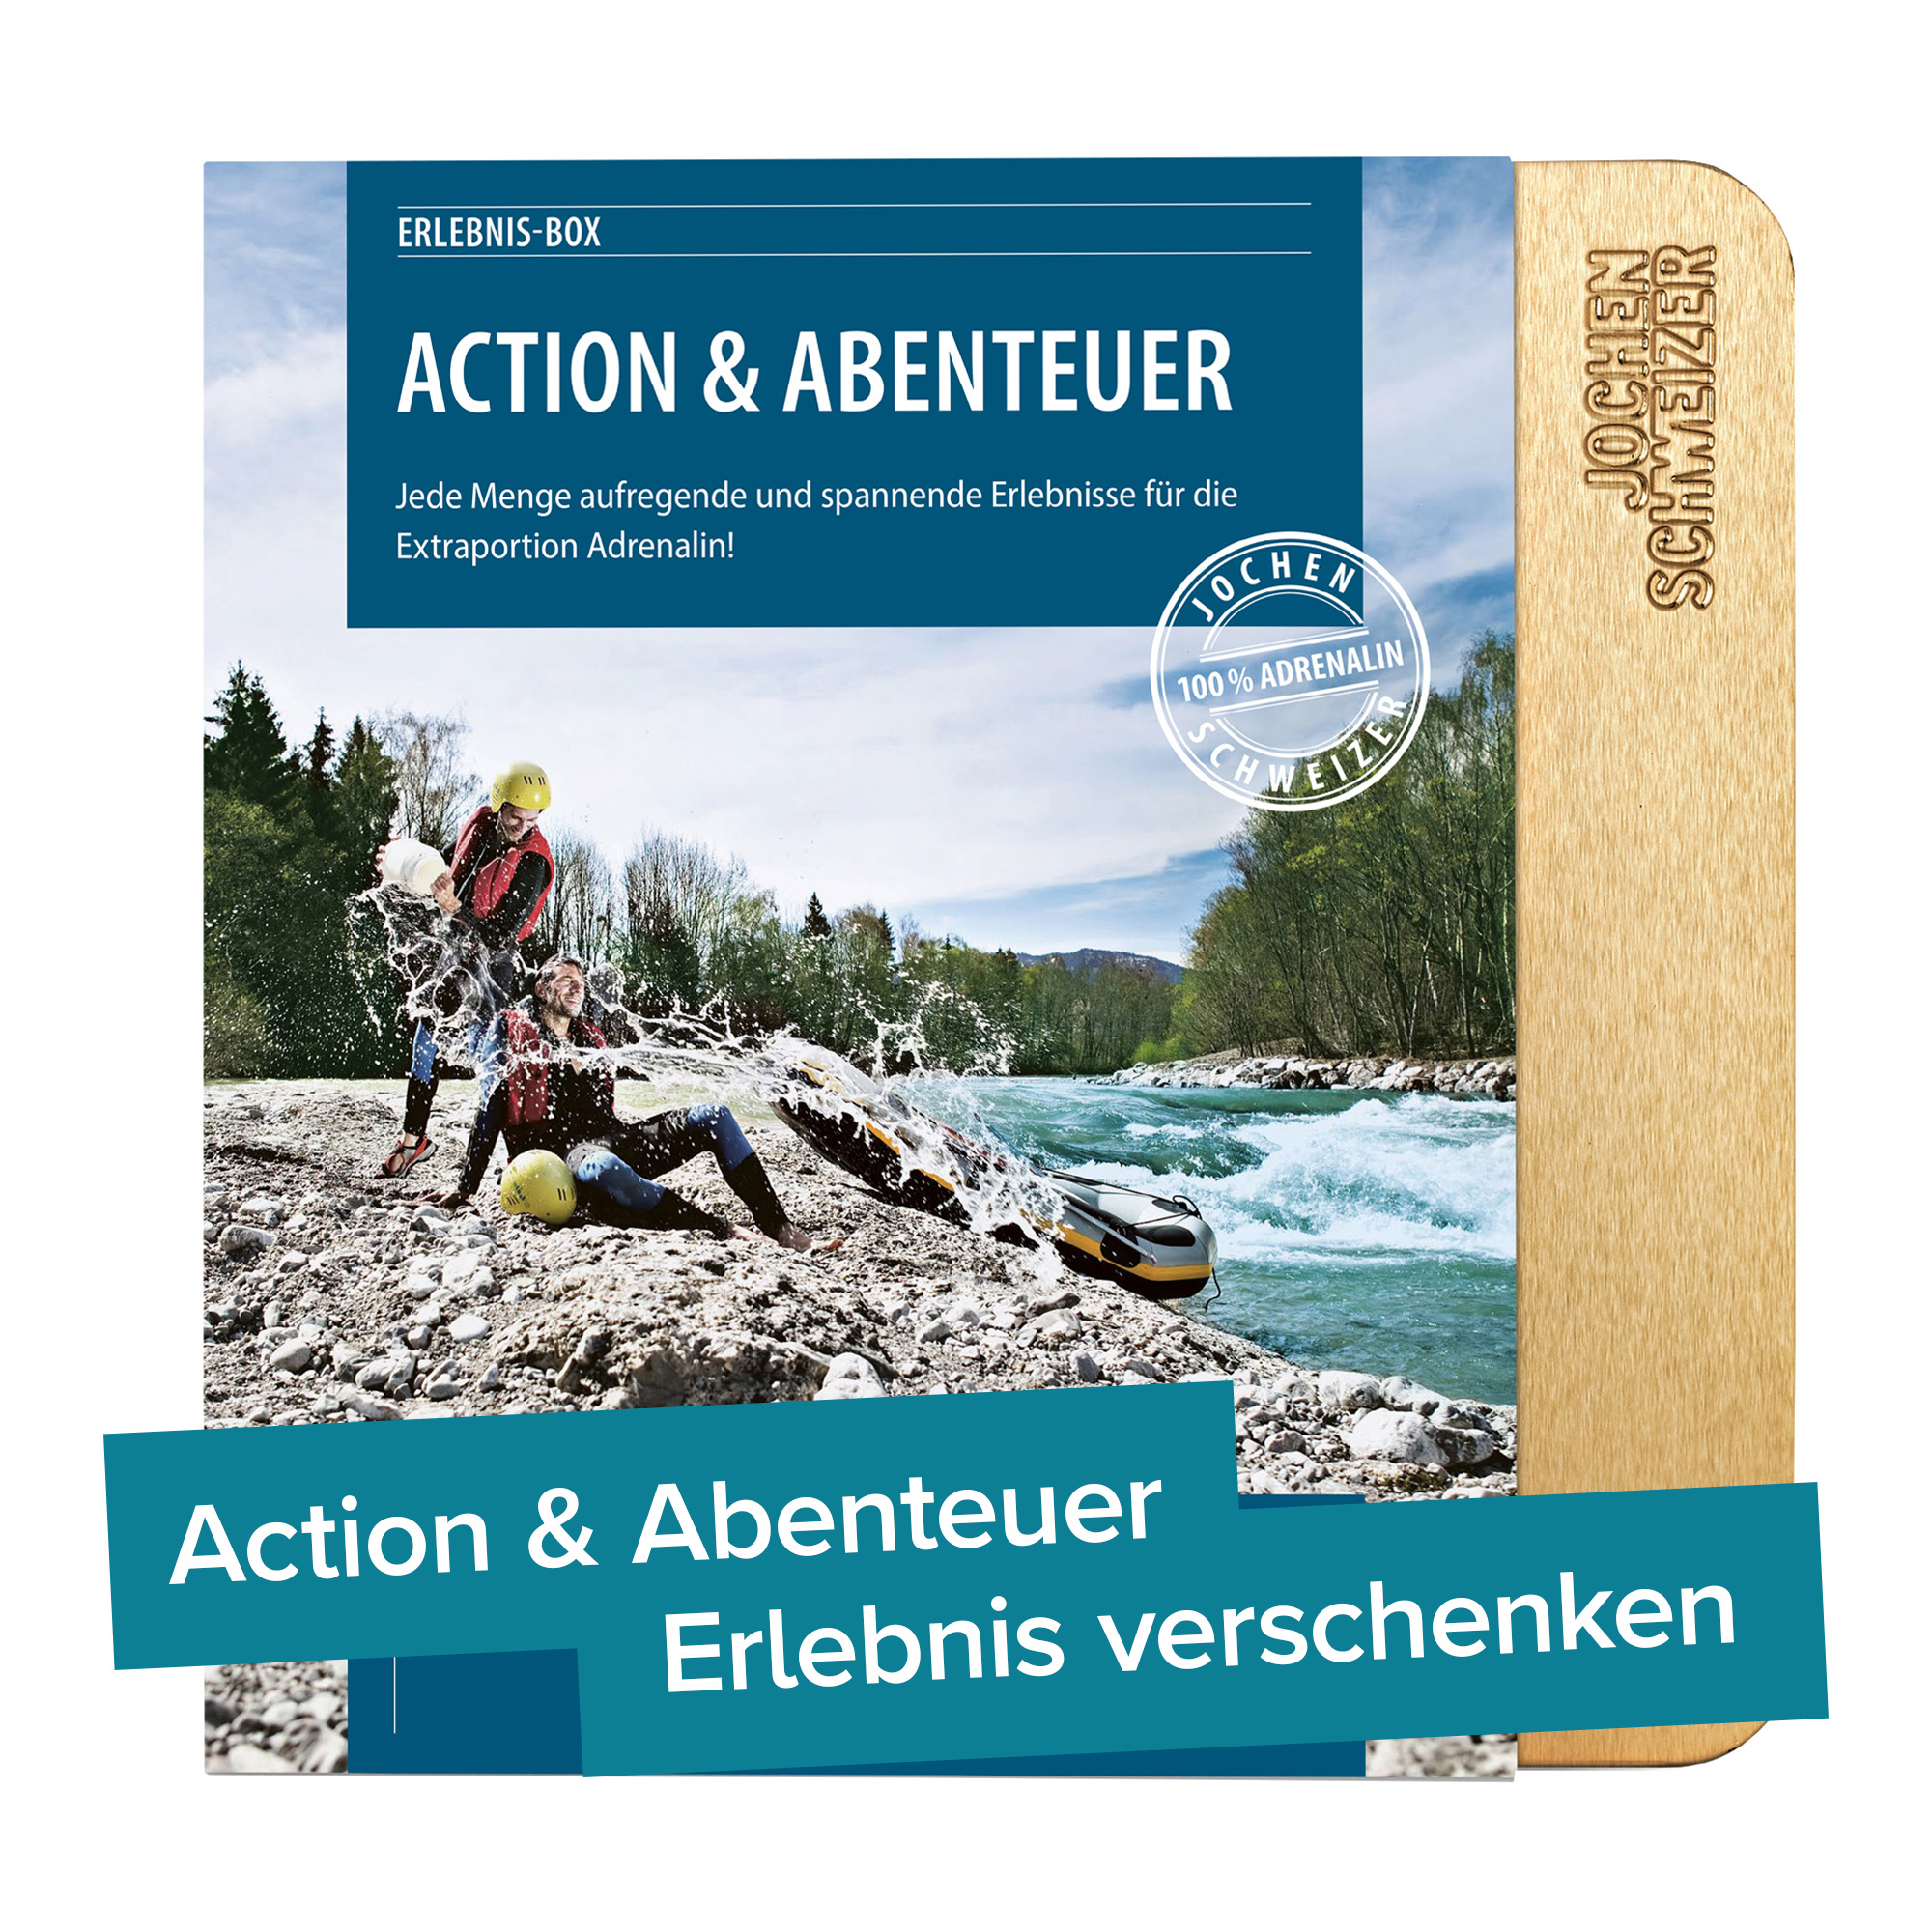 Action & Abenteuer - Erlebnisgeschenk 4192 - 5